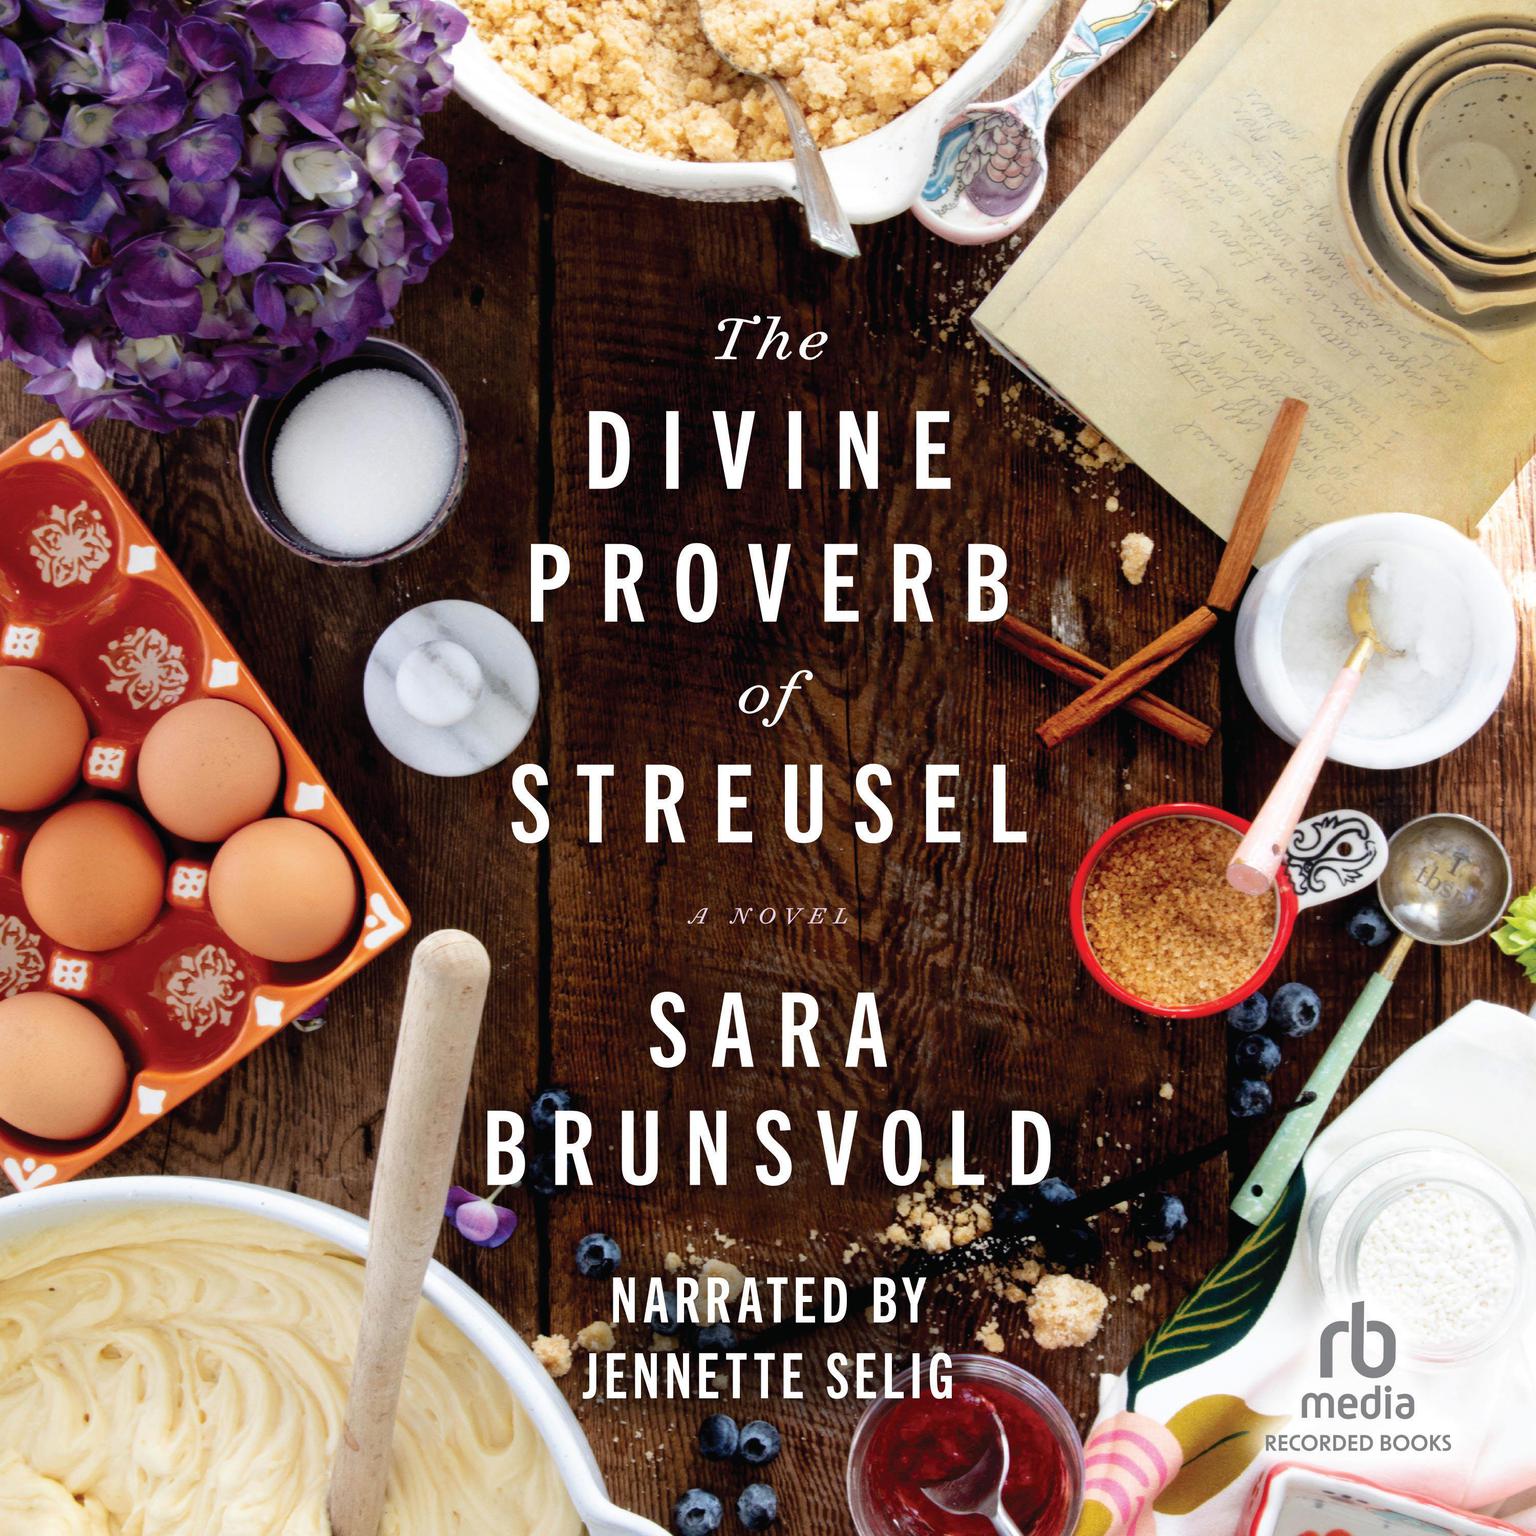 Divine Proverb of Streusel Audiobook, by Sara Brunsvold